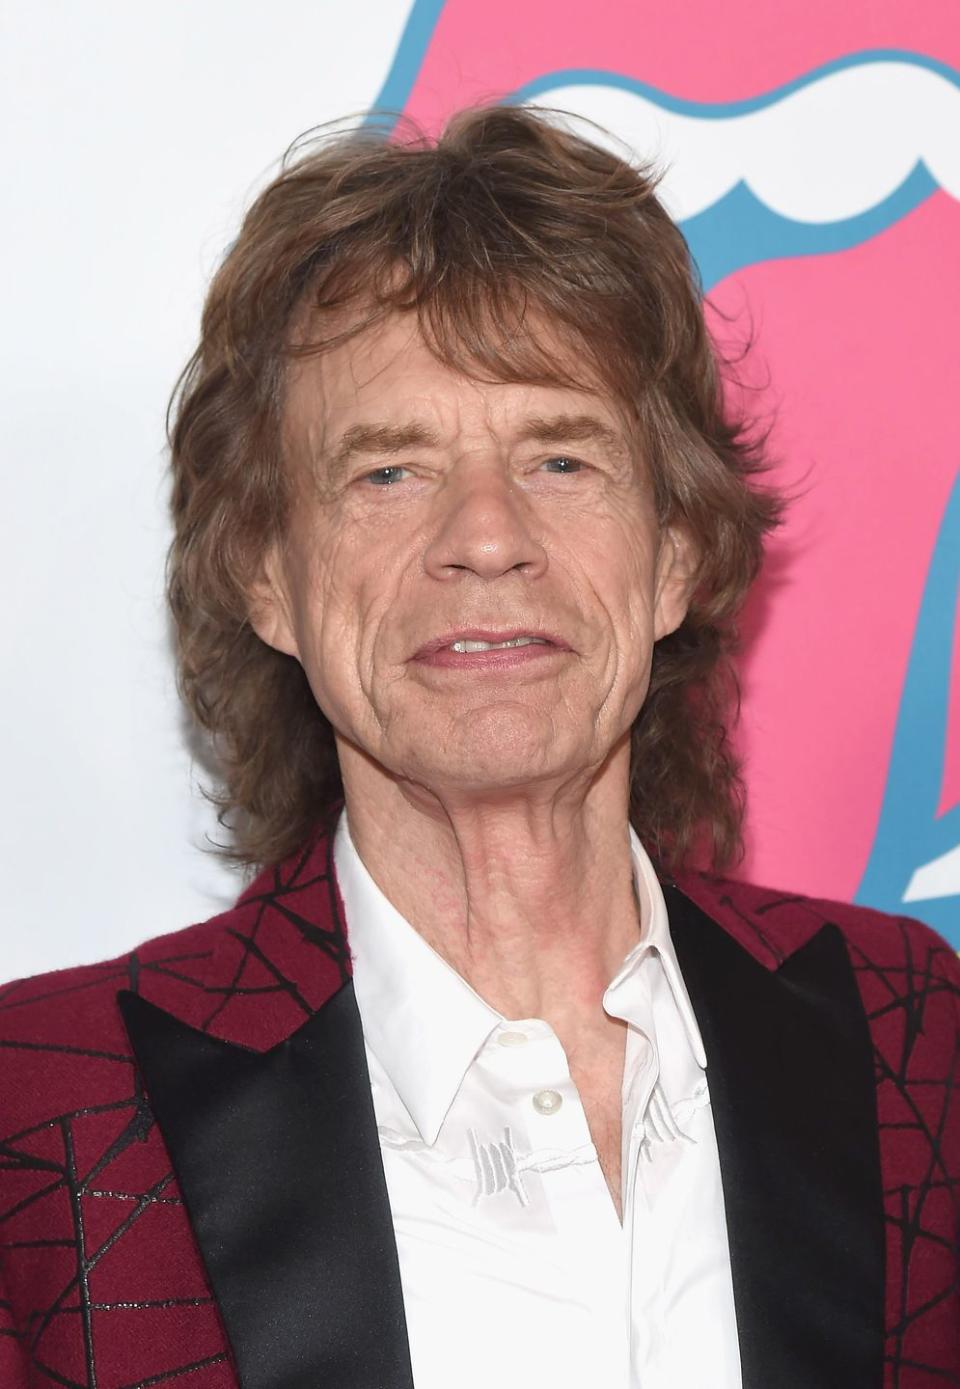 Mick Jagger at 72